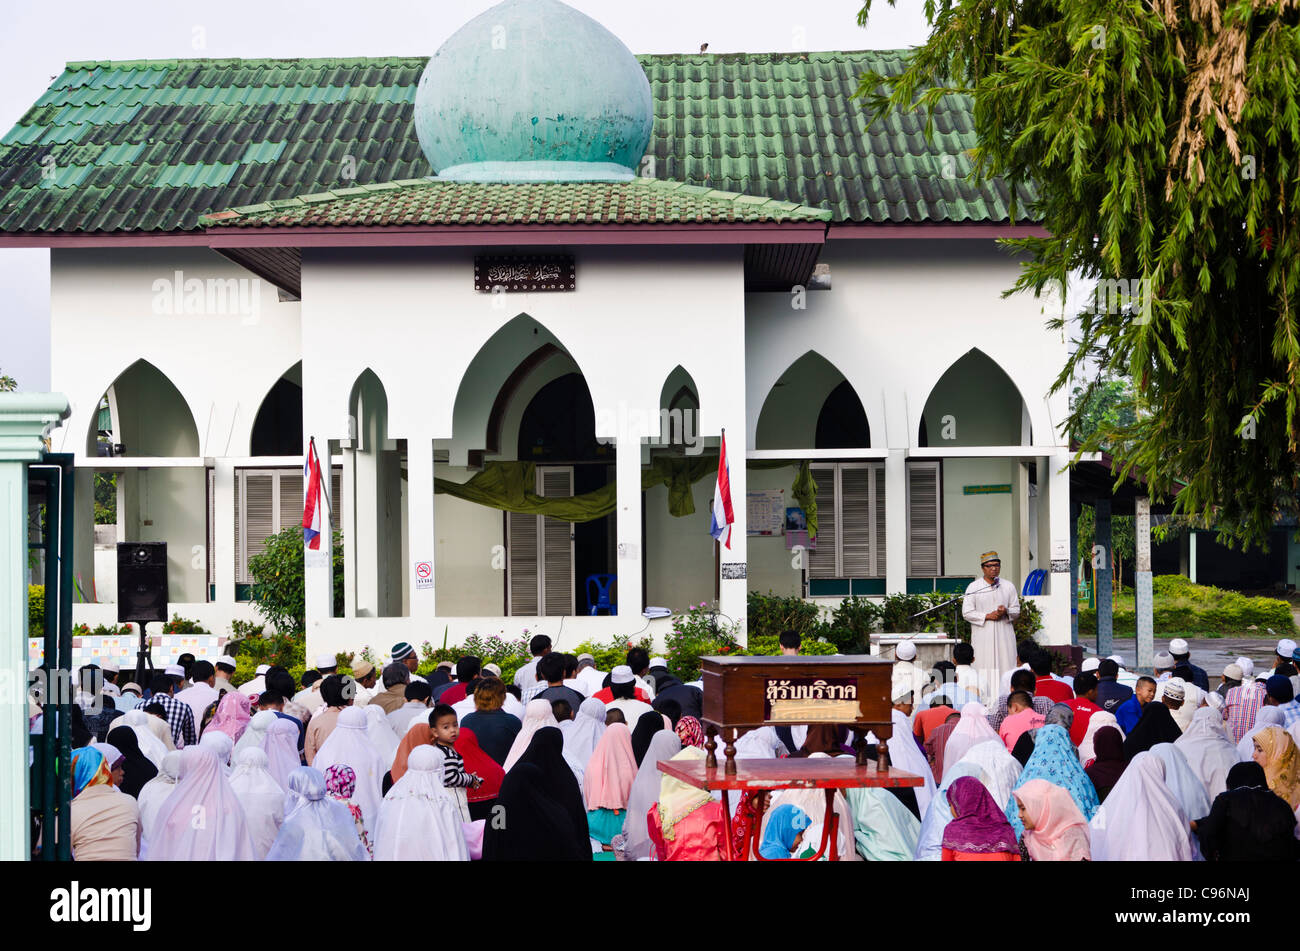 Mosquée avec un service religieux en plein air en session. Des dizaines de personnes assises sur le sol en robe musulmane dans le nord de la Thaïlande Banque D'Images